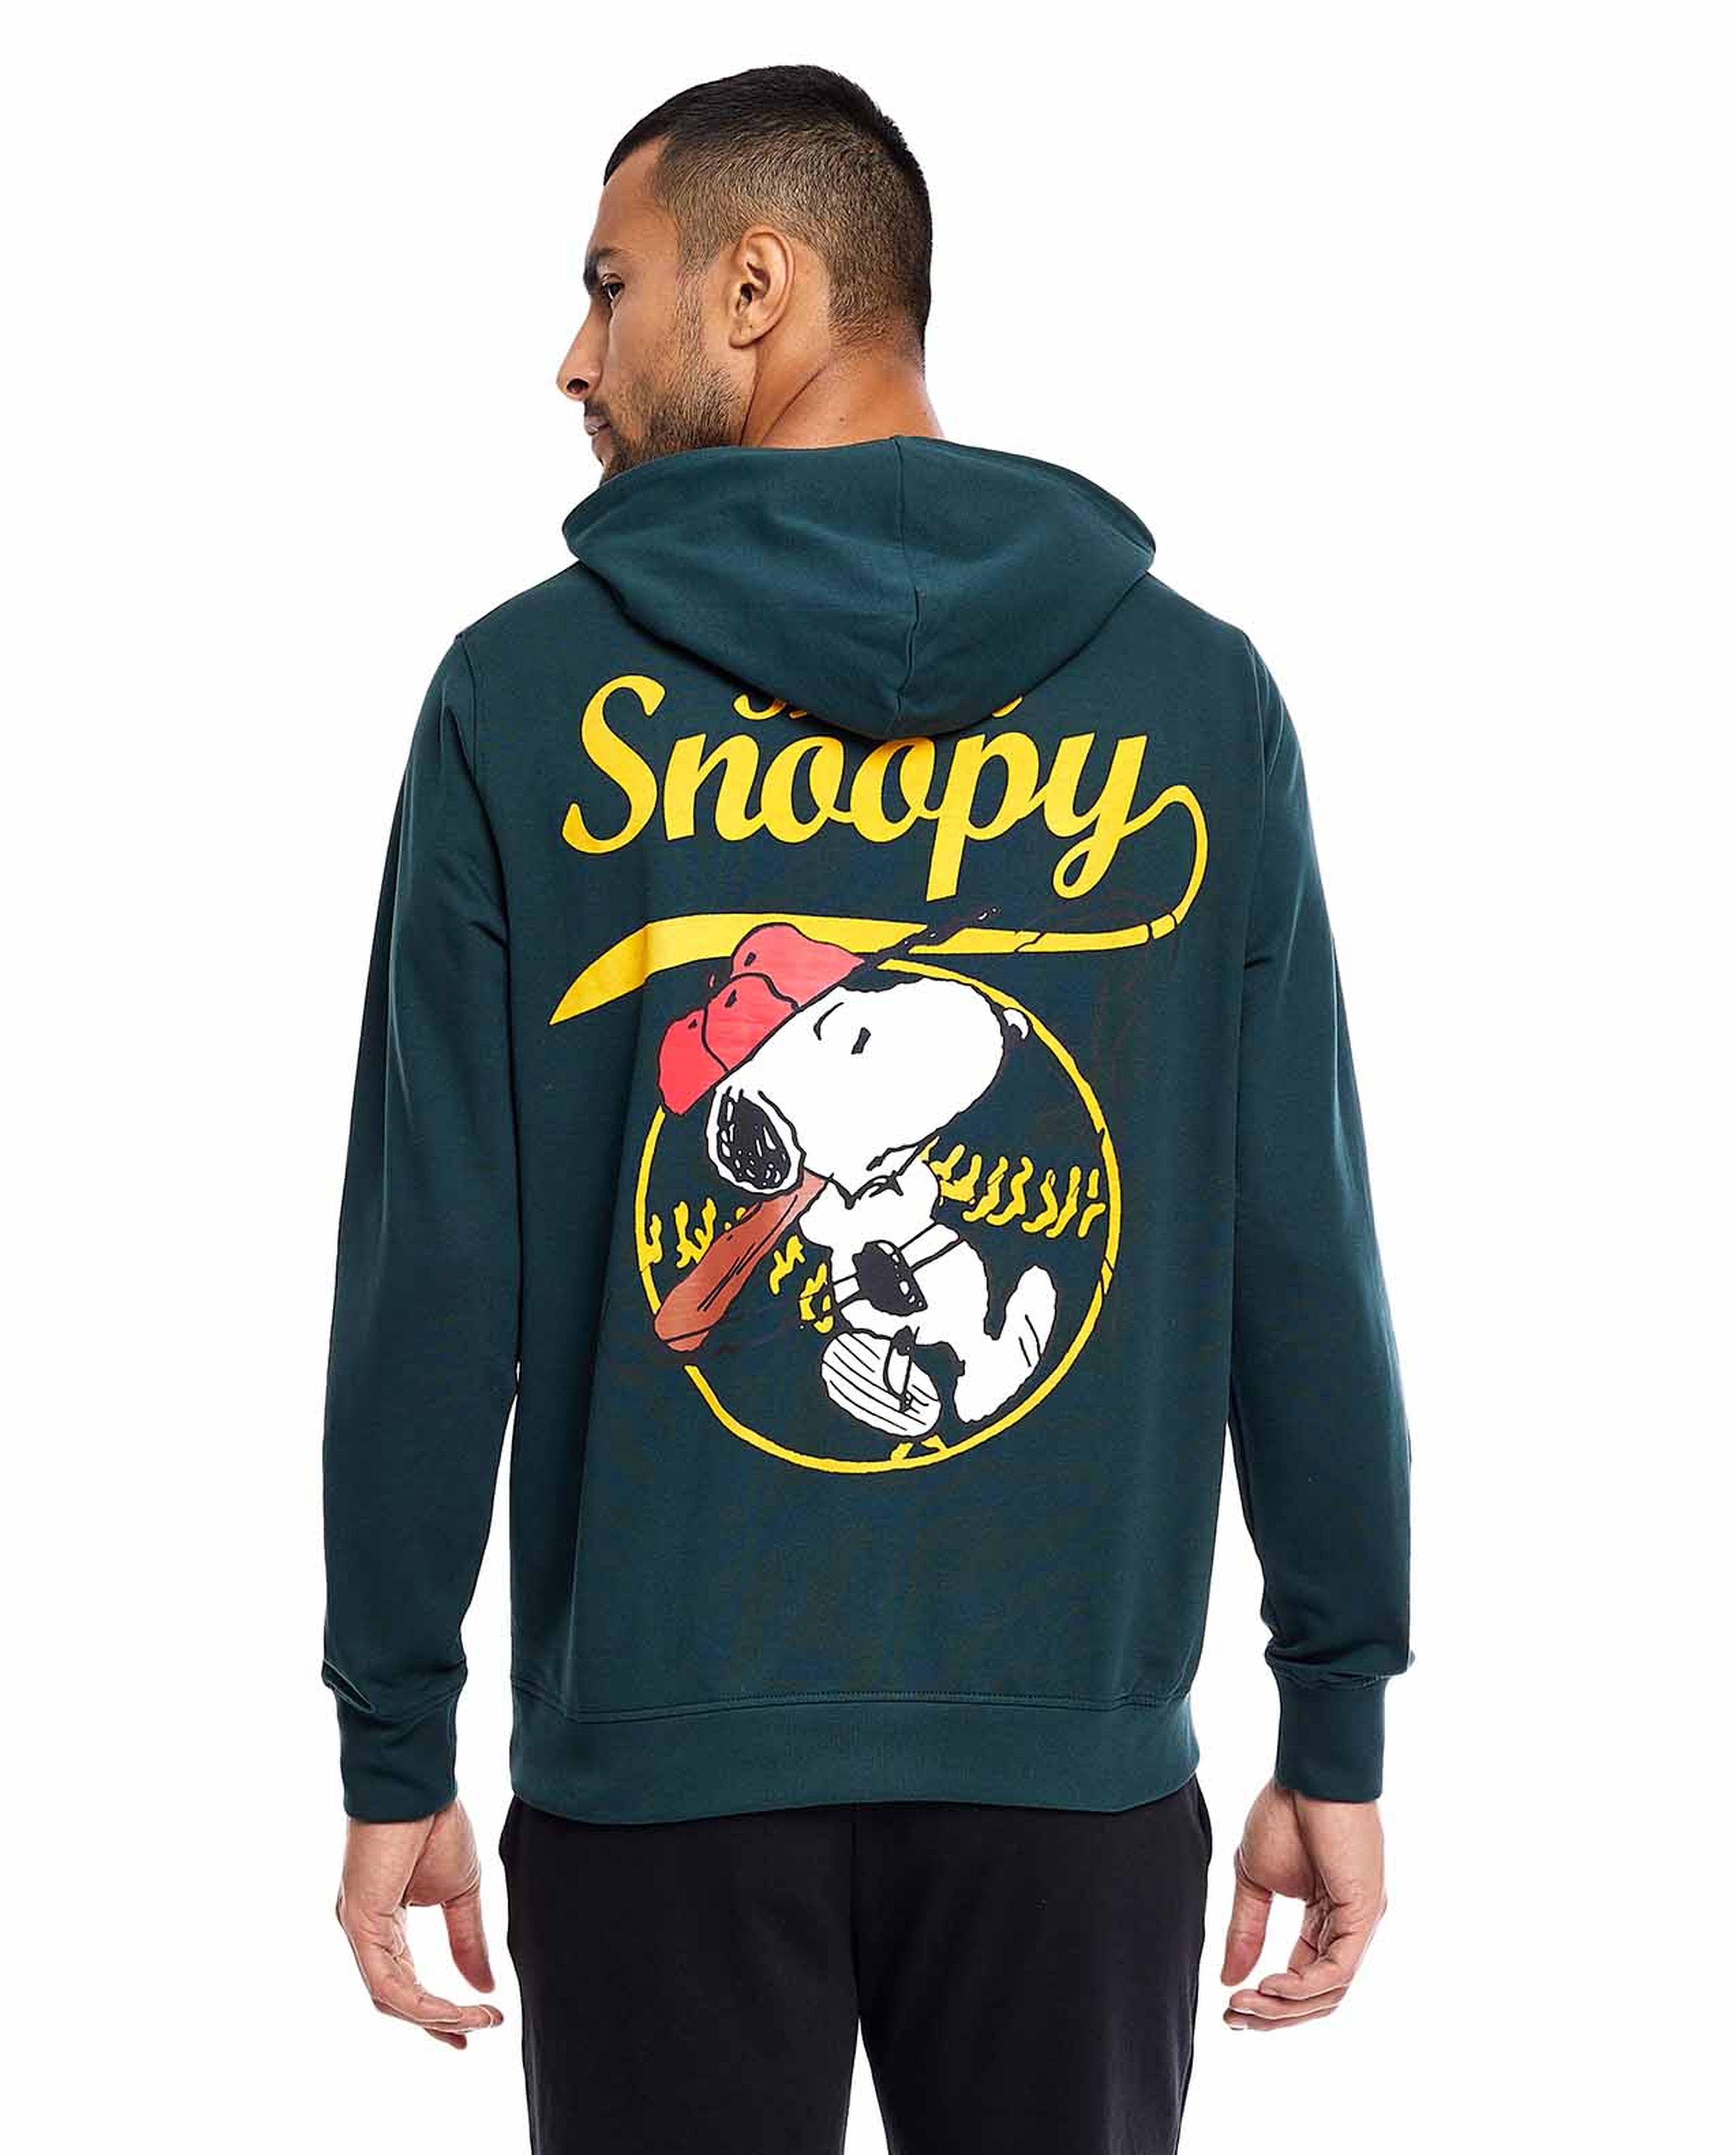 Snoopy Print Hoodie with Long Sleeves